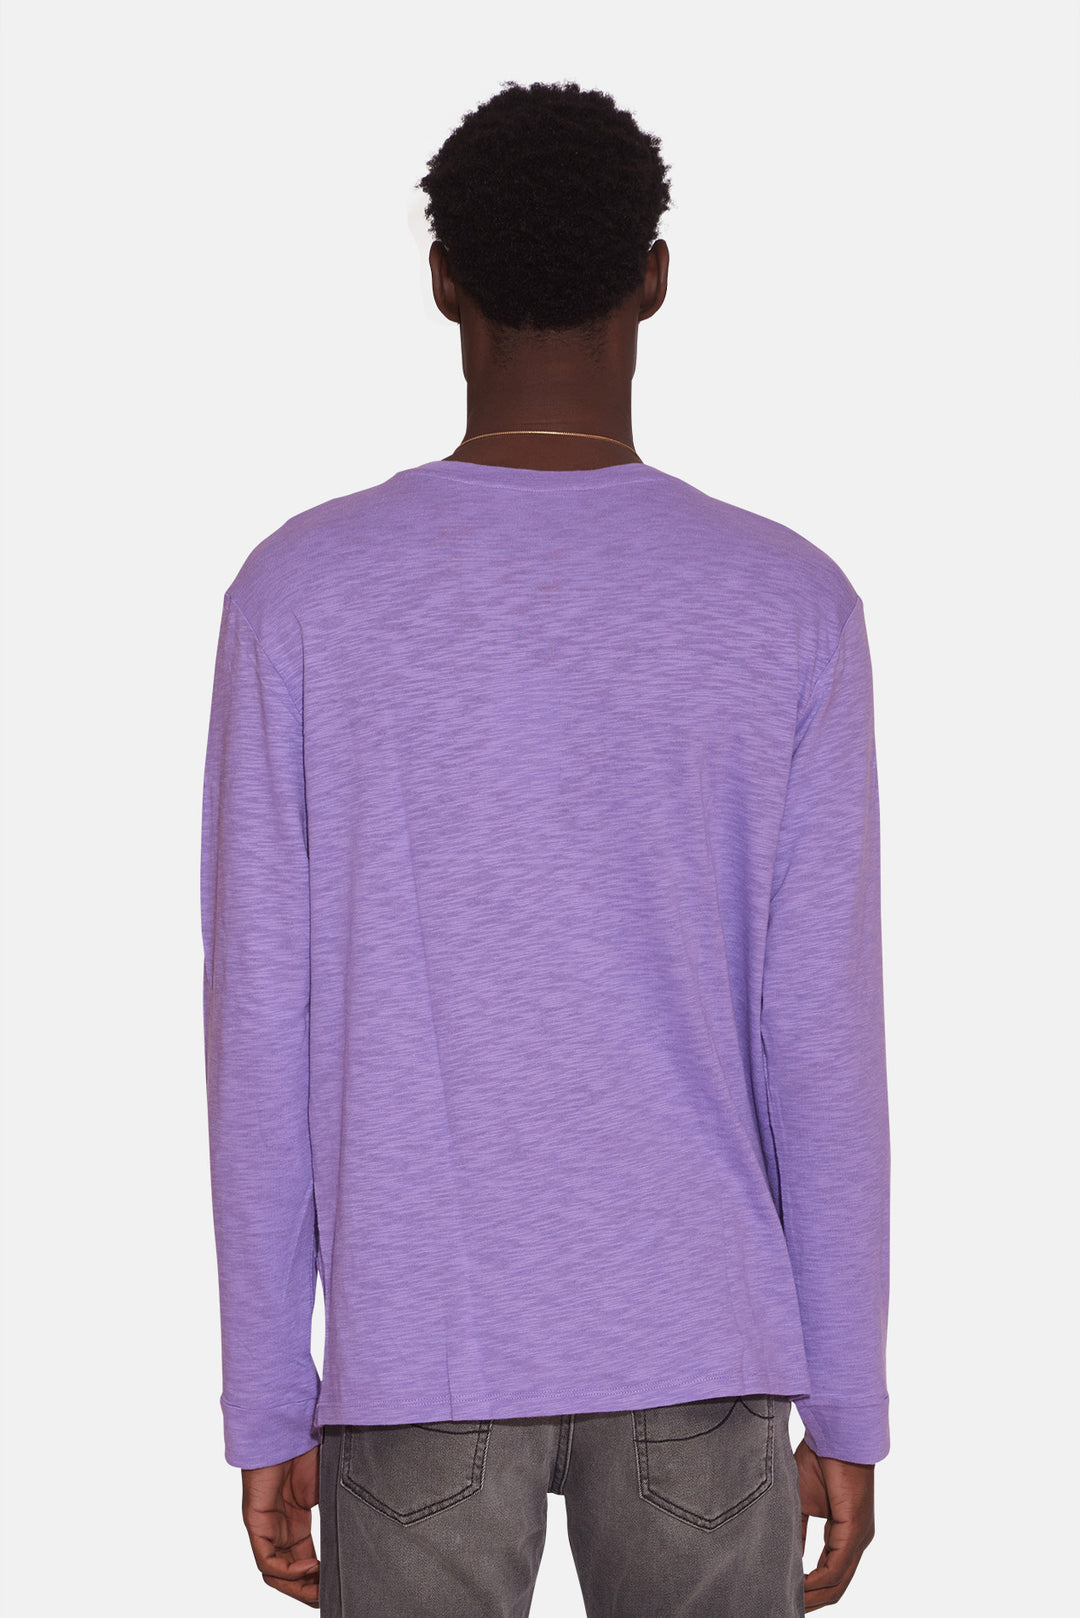 Slub Long Sleeve Tee Soft Purple